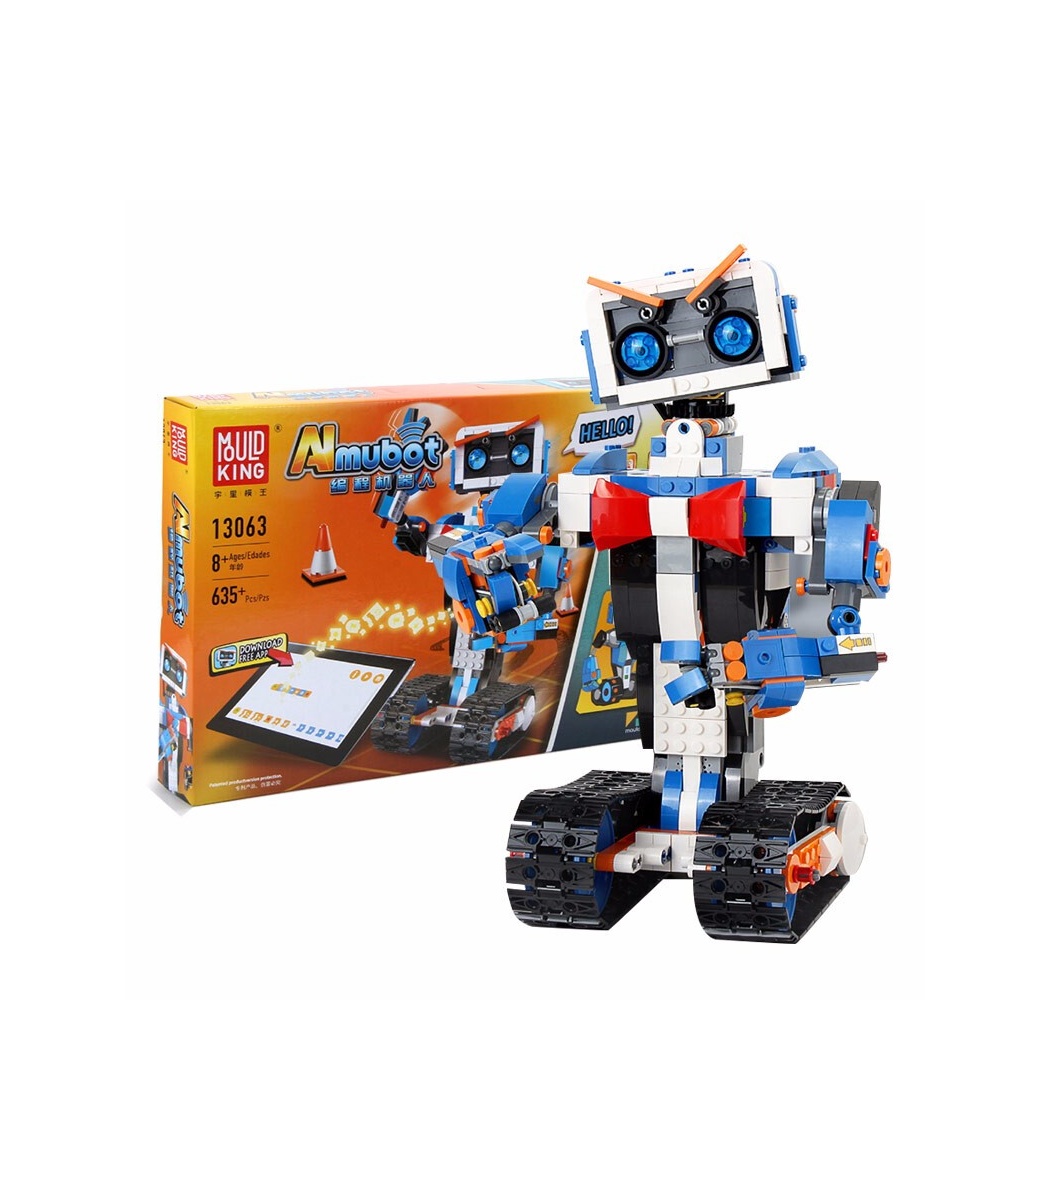 døråbning genopfyldning hvidløg MOULD KING 13063 Aimubot Intelligent RC DIY Robot Building Blocks Toy Set -  BuildingToyStore.com